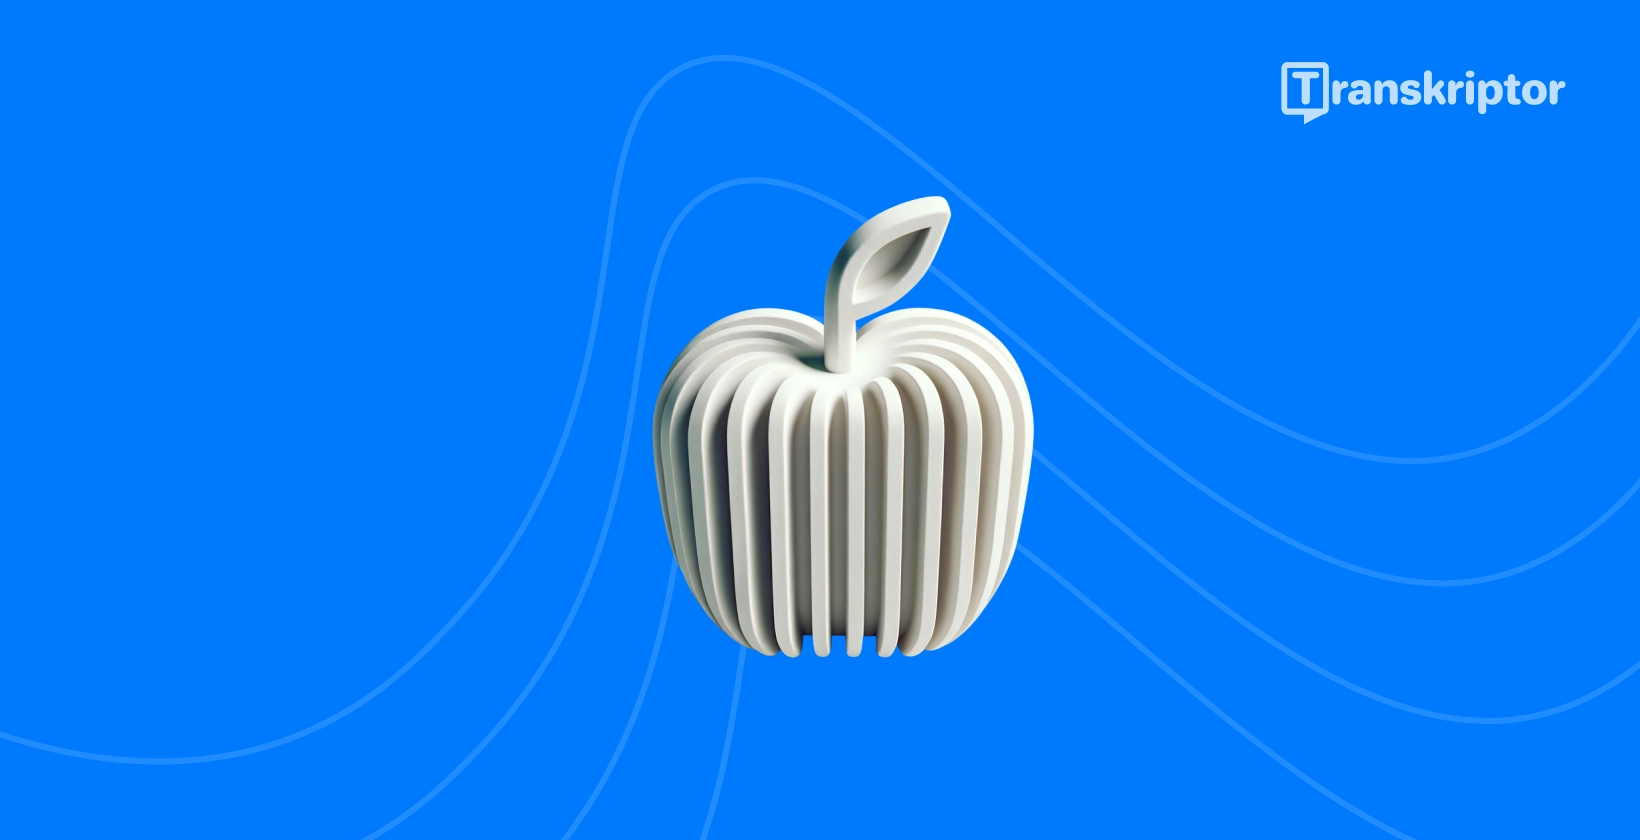 Stilizēts ābols ar skaņas viļņiem ir populārākās transkripcijas lietotnes, kas pieejamas iPhone lietotājiem.